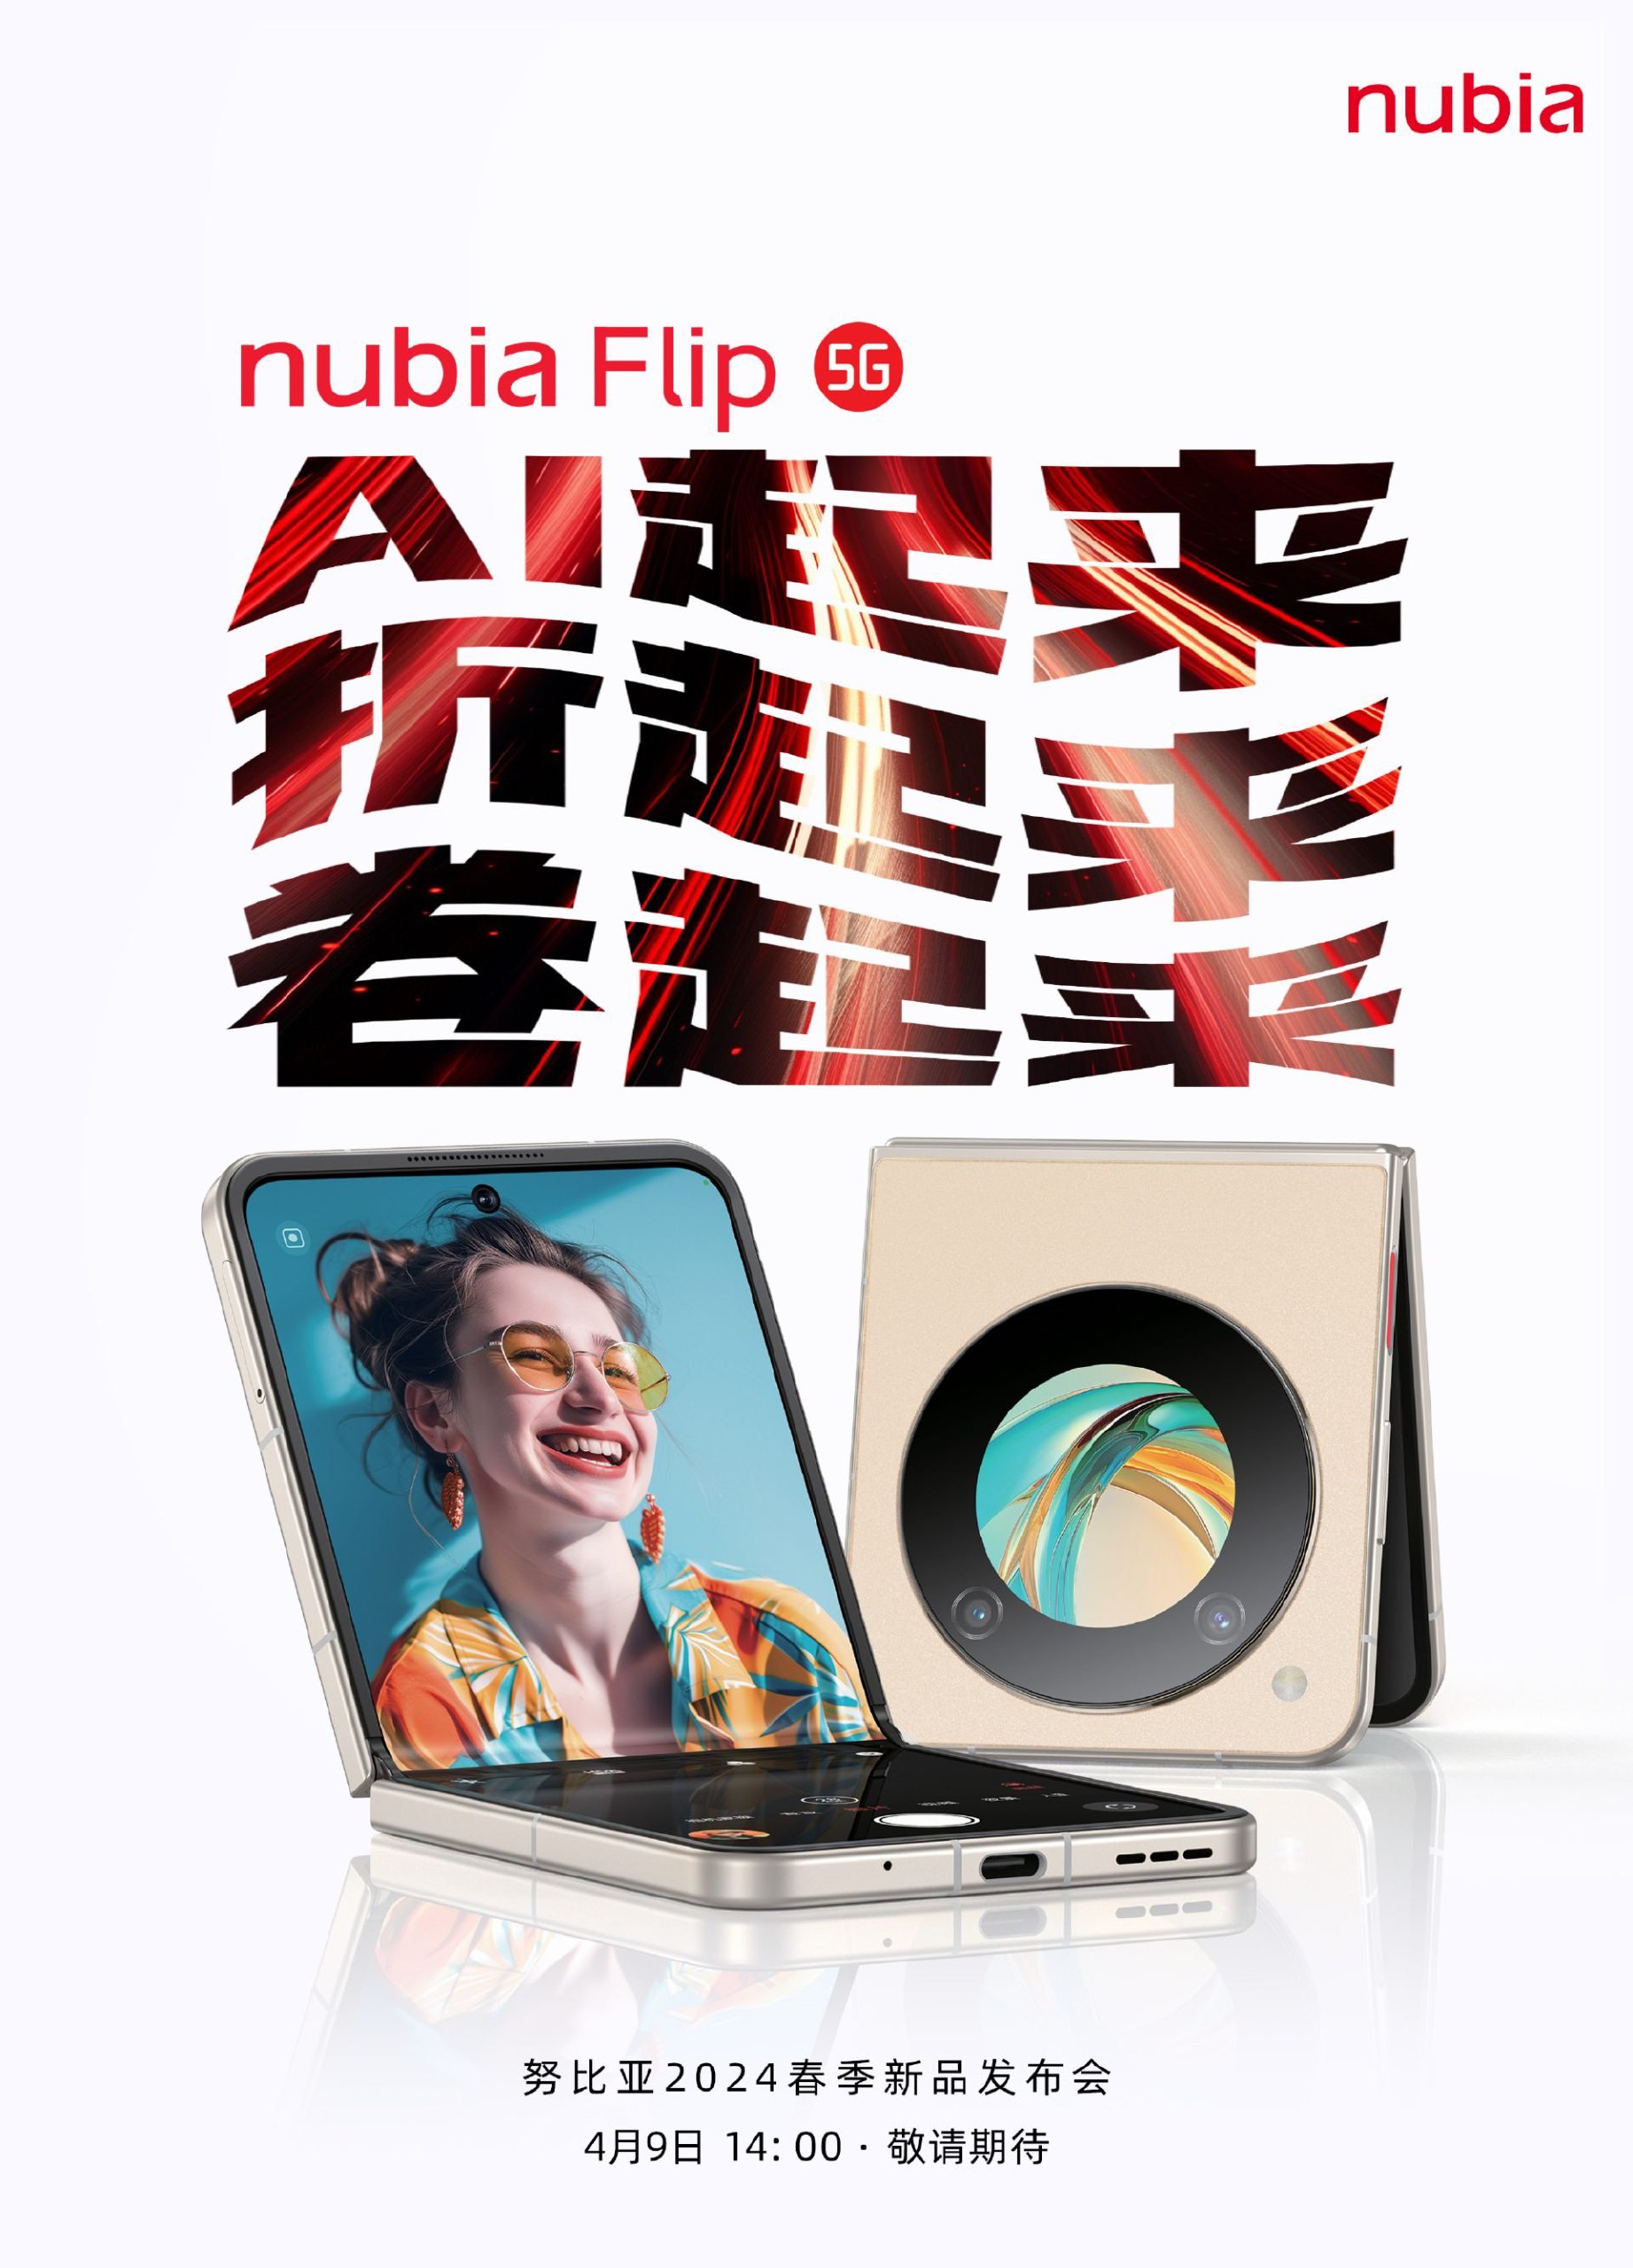 تأكيد تاريخ إطلاق هاتف Nubia Flip 5G.. إليك ما يمكن توقعه